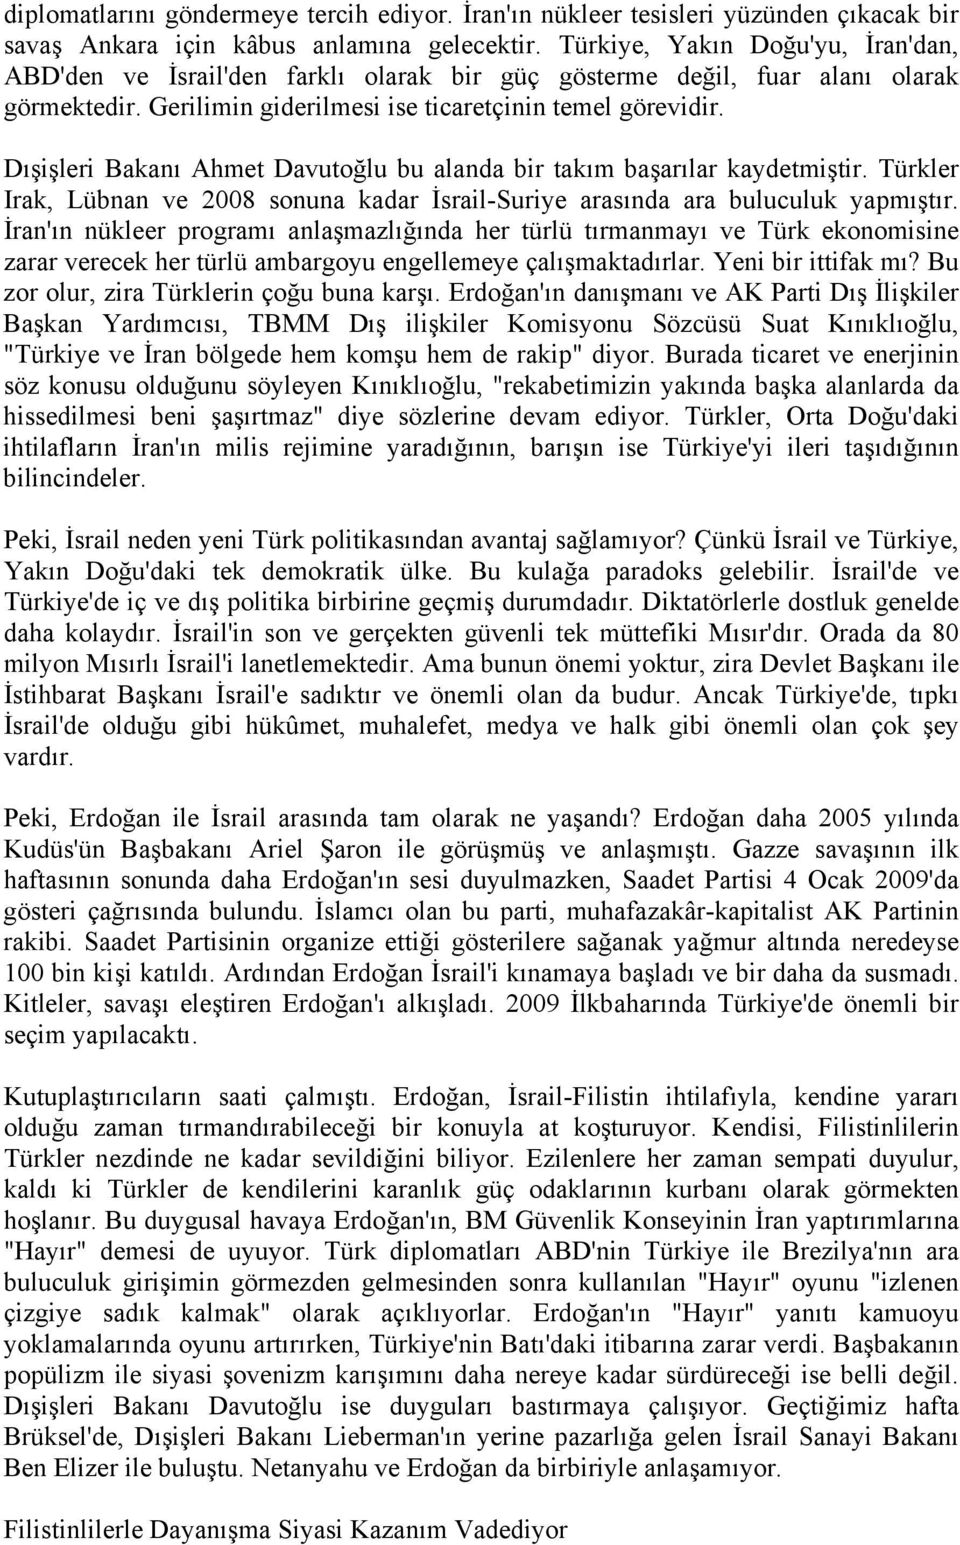 Dışişleri Bakanı Ahmet Davutoğlu bu alanda bir takım başarılar kaydetmiştir. Türkler Irak, Lübnan ve 2008 sonuna kadar İsrail-Suriye arasında ara buluculuk yapmıştır.